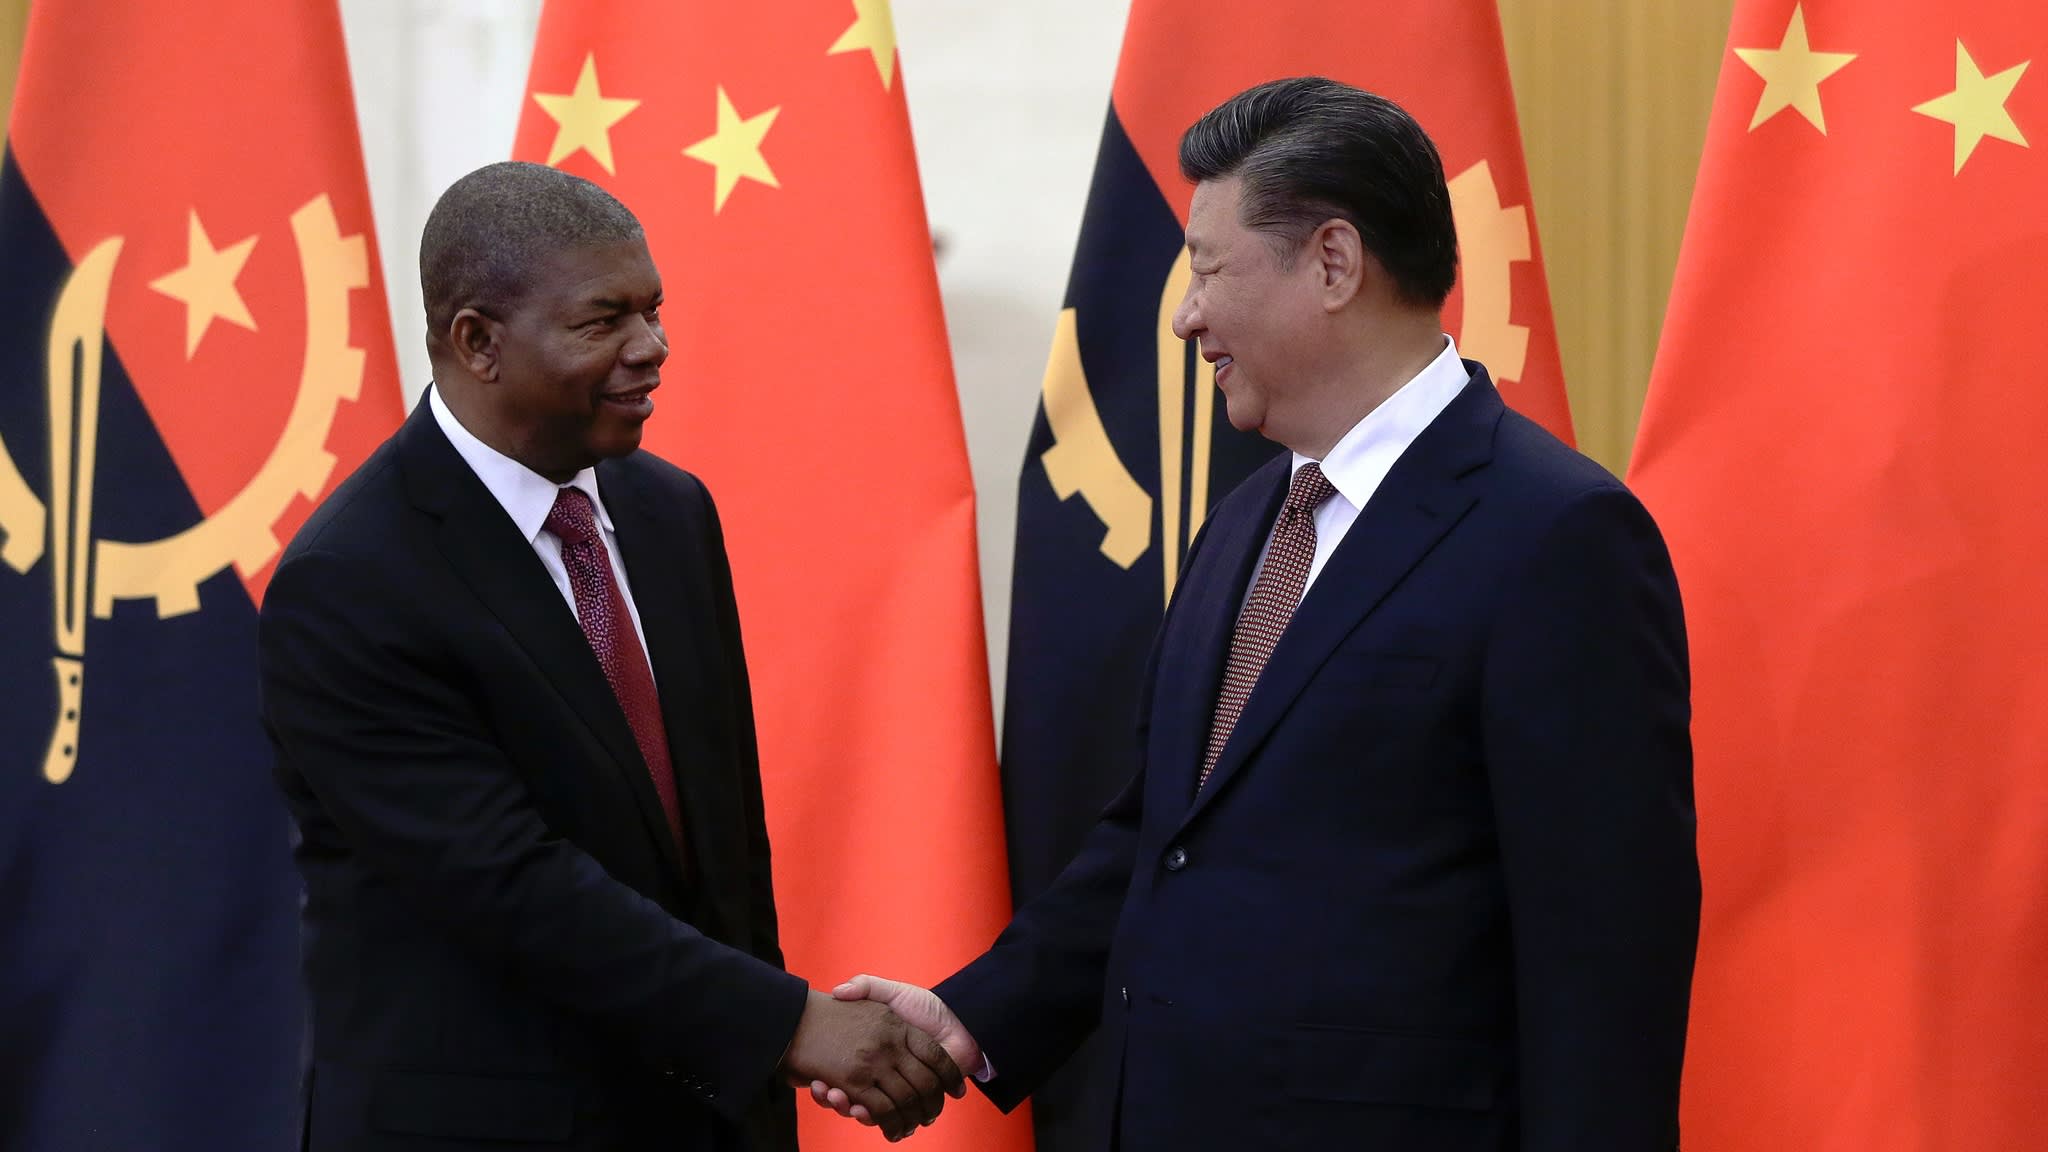 Nợ Angola: Việt Nam đã thanh toán nợ cho Angola trước thời hạn trong năm